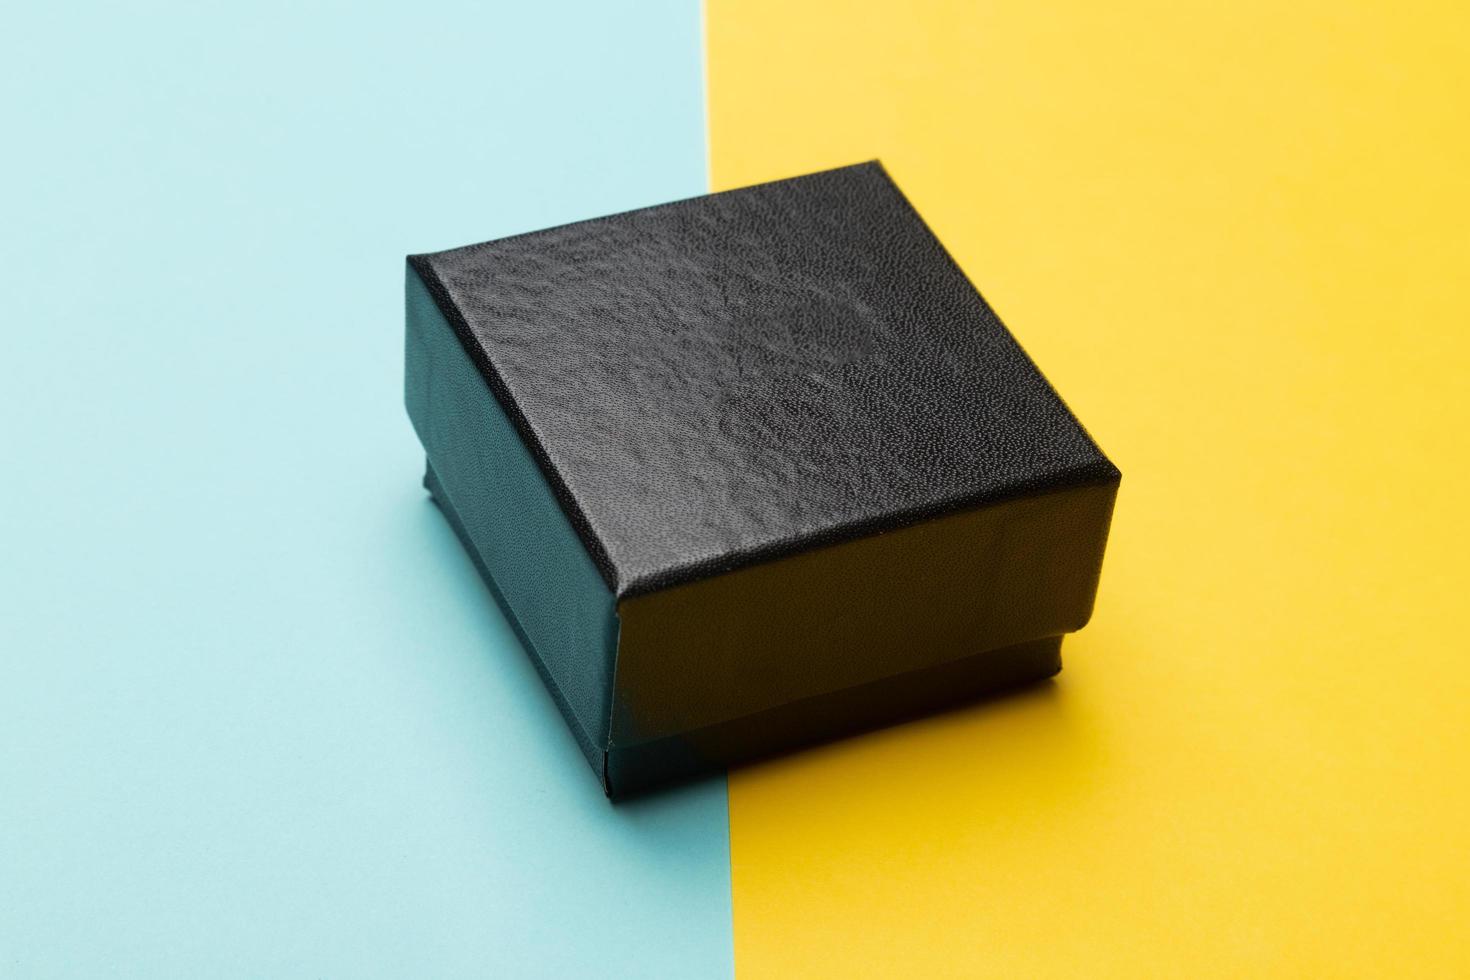 Mini boîte noire isolée sur fond bleu moitié jaune photo